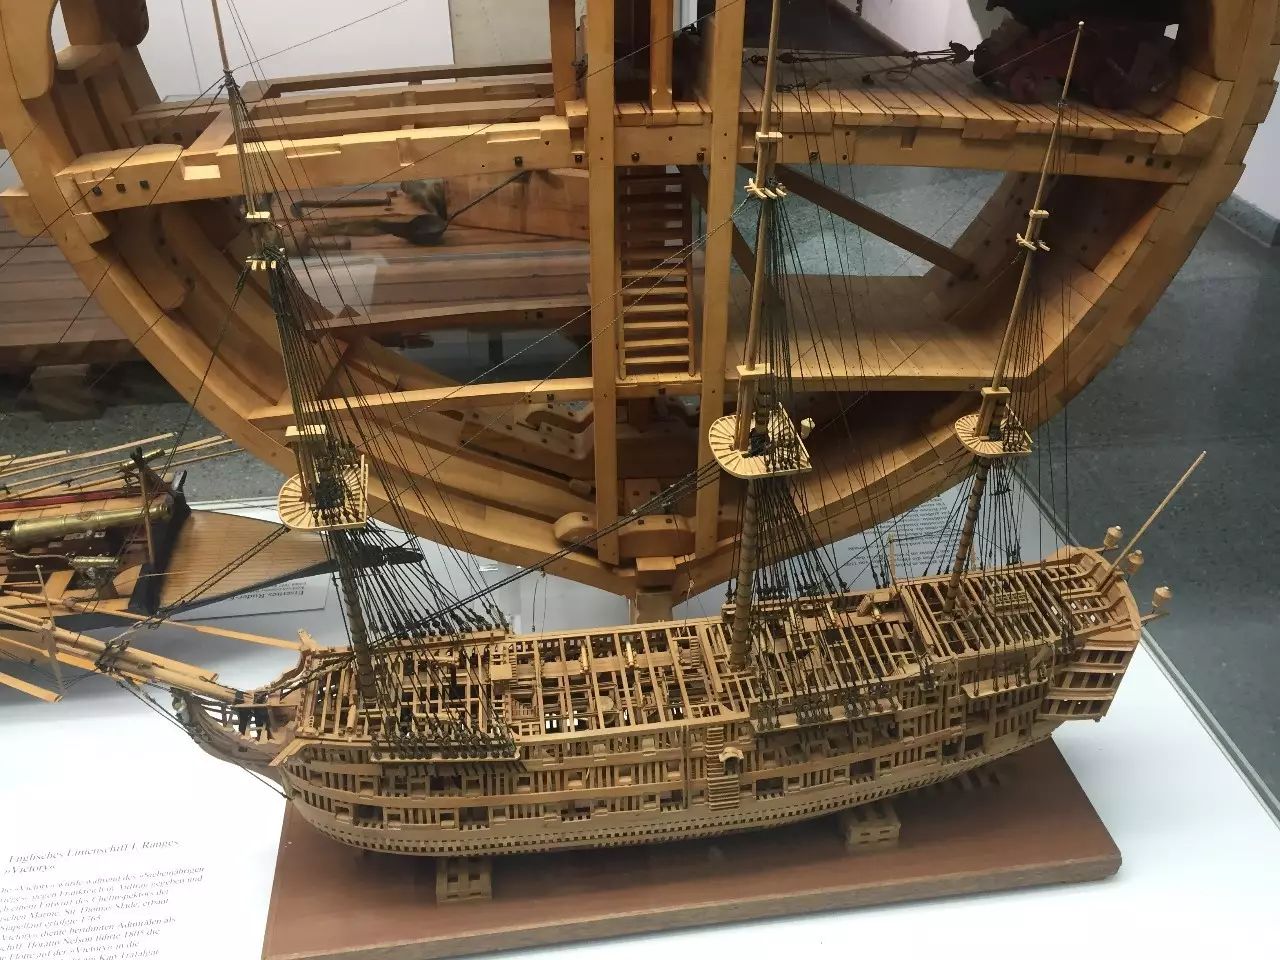 19世纪的明轮蒸汽船德意志航海博物馆掠影